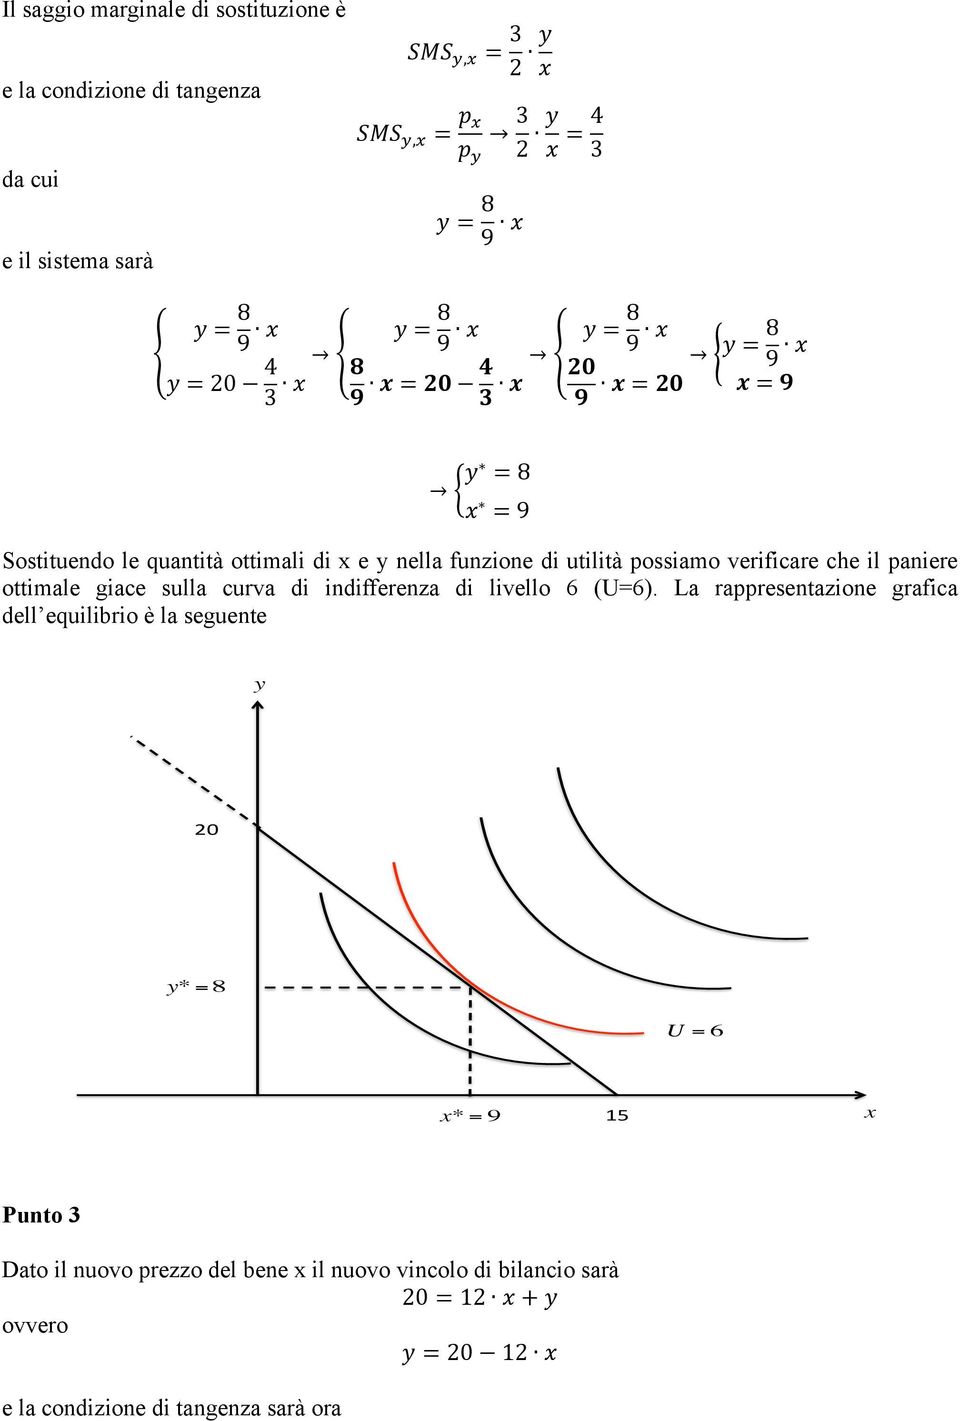 verificare che il paniere ottimale giace sulla curva di indifferenza di livello 6 (U=6).